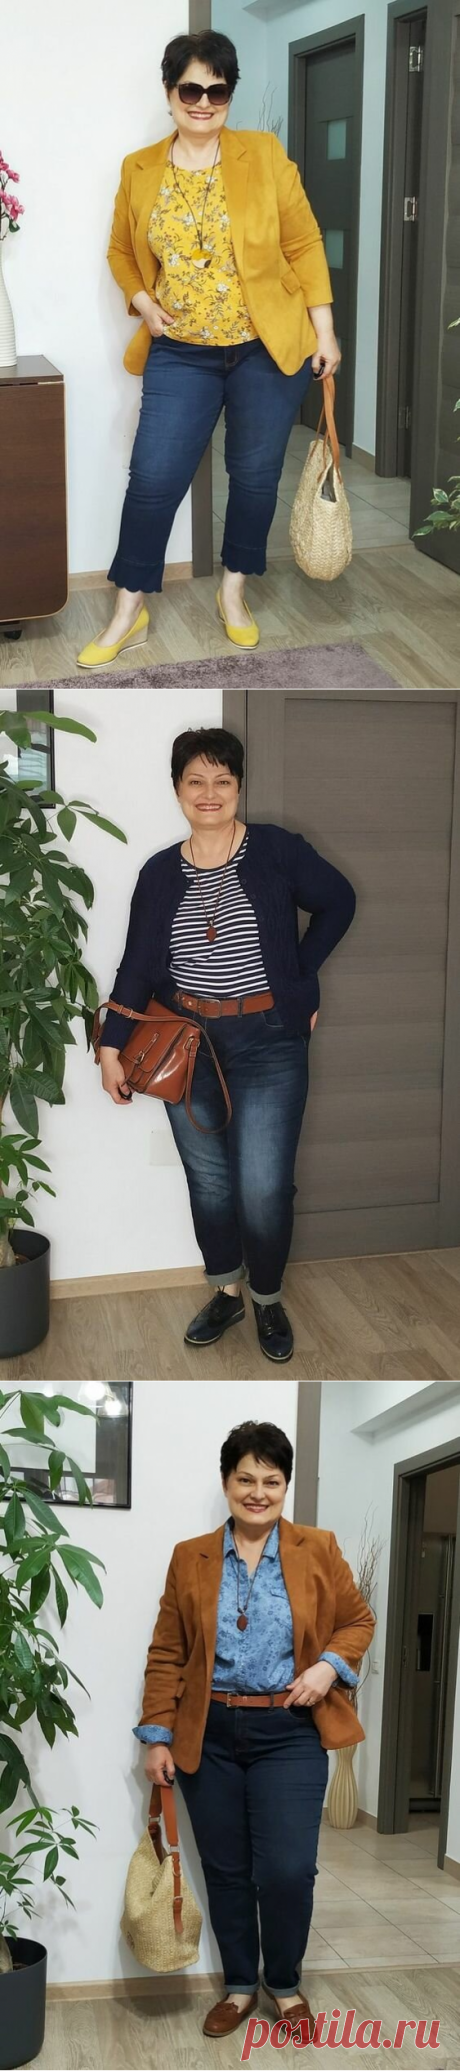 С чем носить джинсы полной женщине 50+ этой весной | Жизнь пышки | Яндекс Дзен